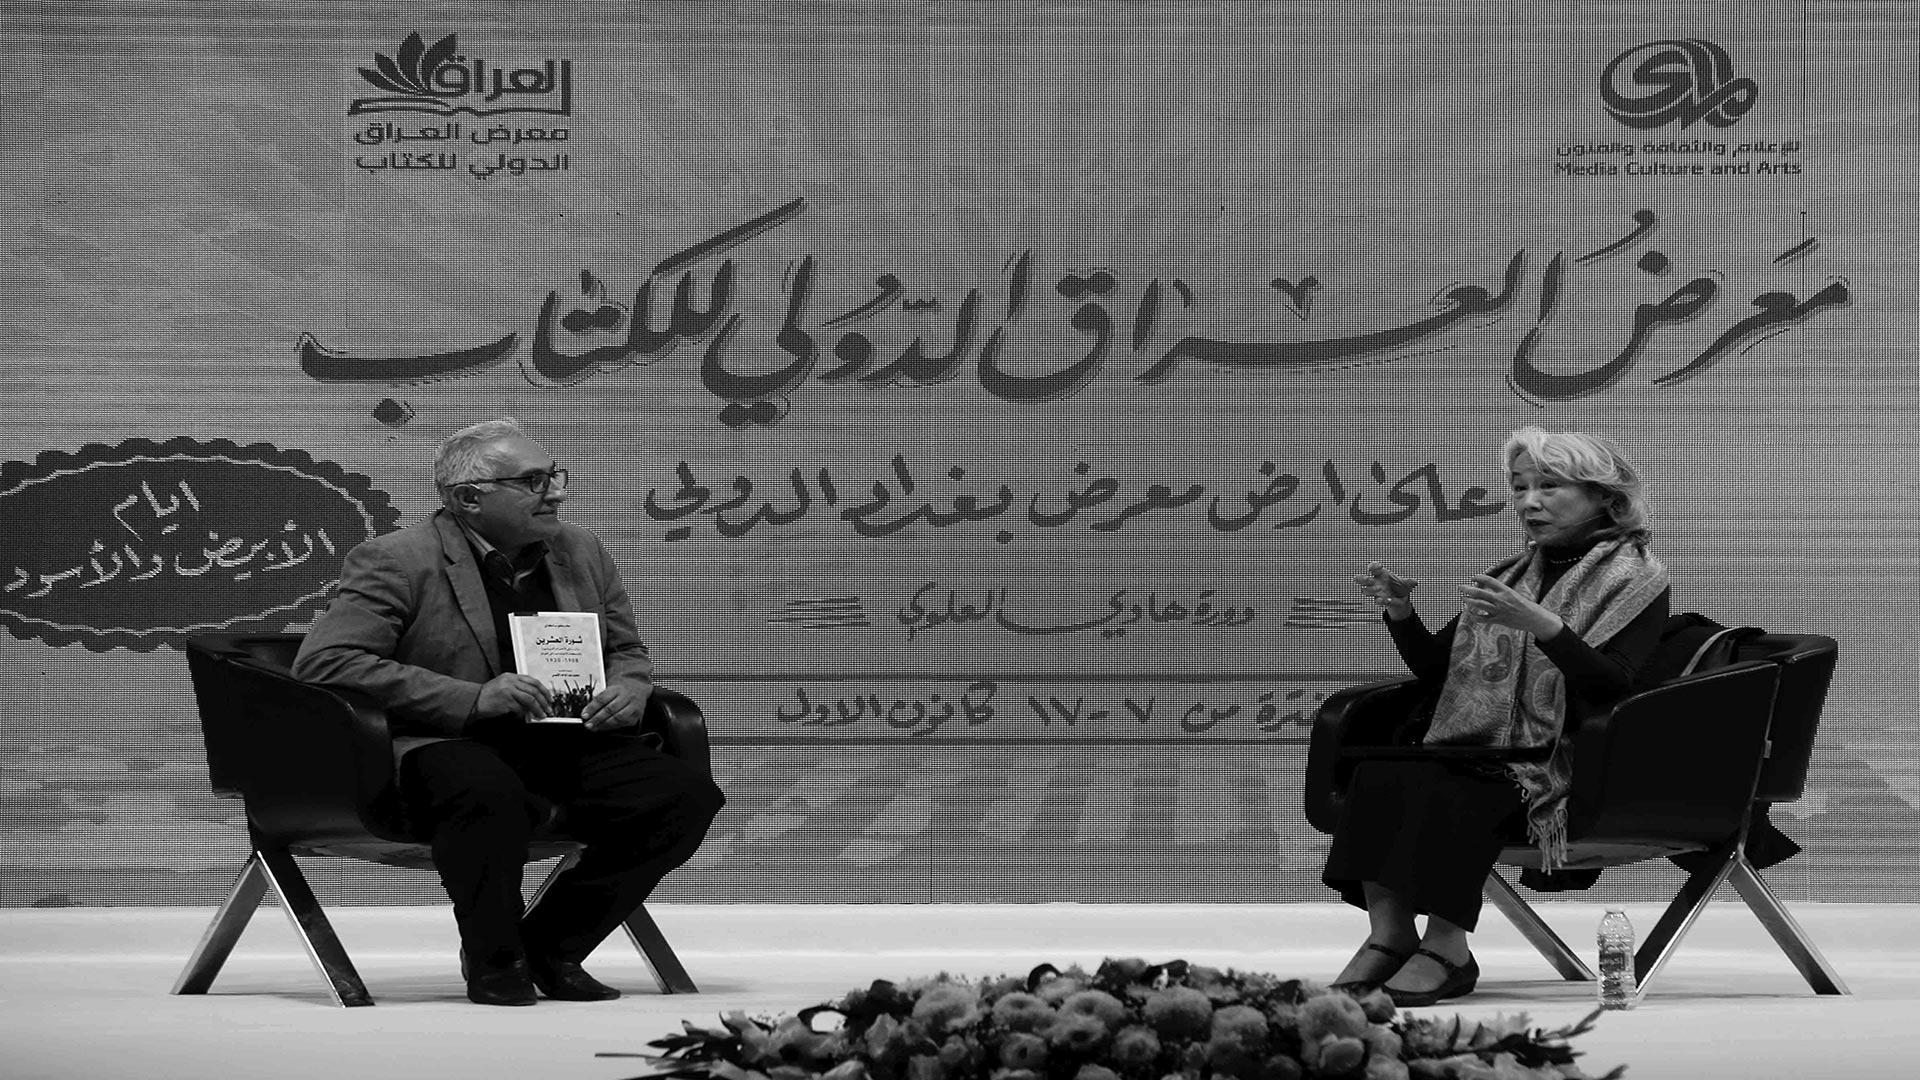 الكاتبة اليابانية في ضيافة معرض العراق الدولي للكتاب..كيكو ساكاي: الشعور الوطني يترسخ عند العراقيين منذ العشرينيات